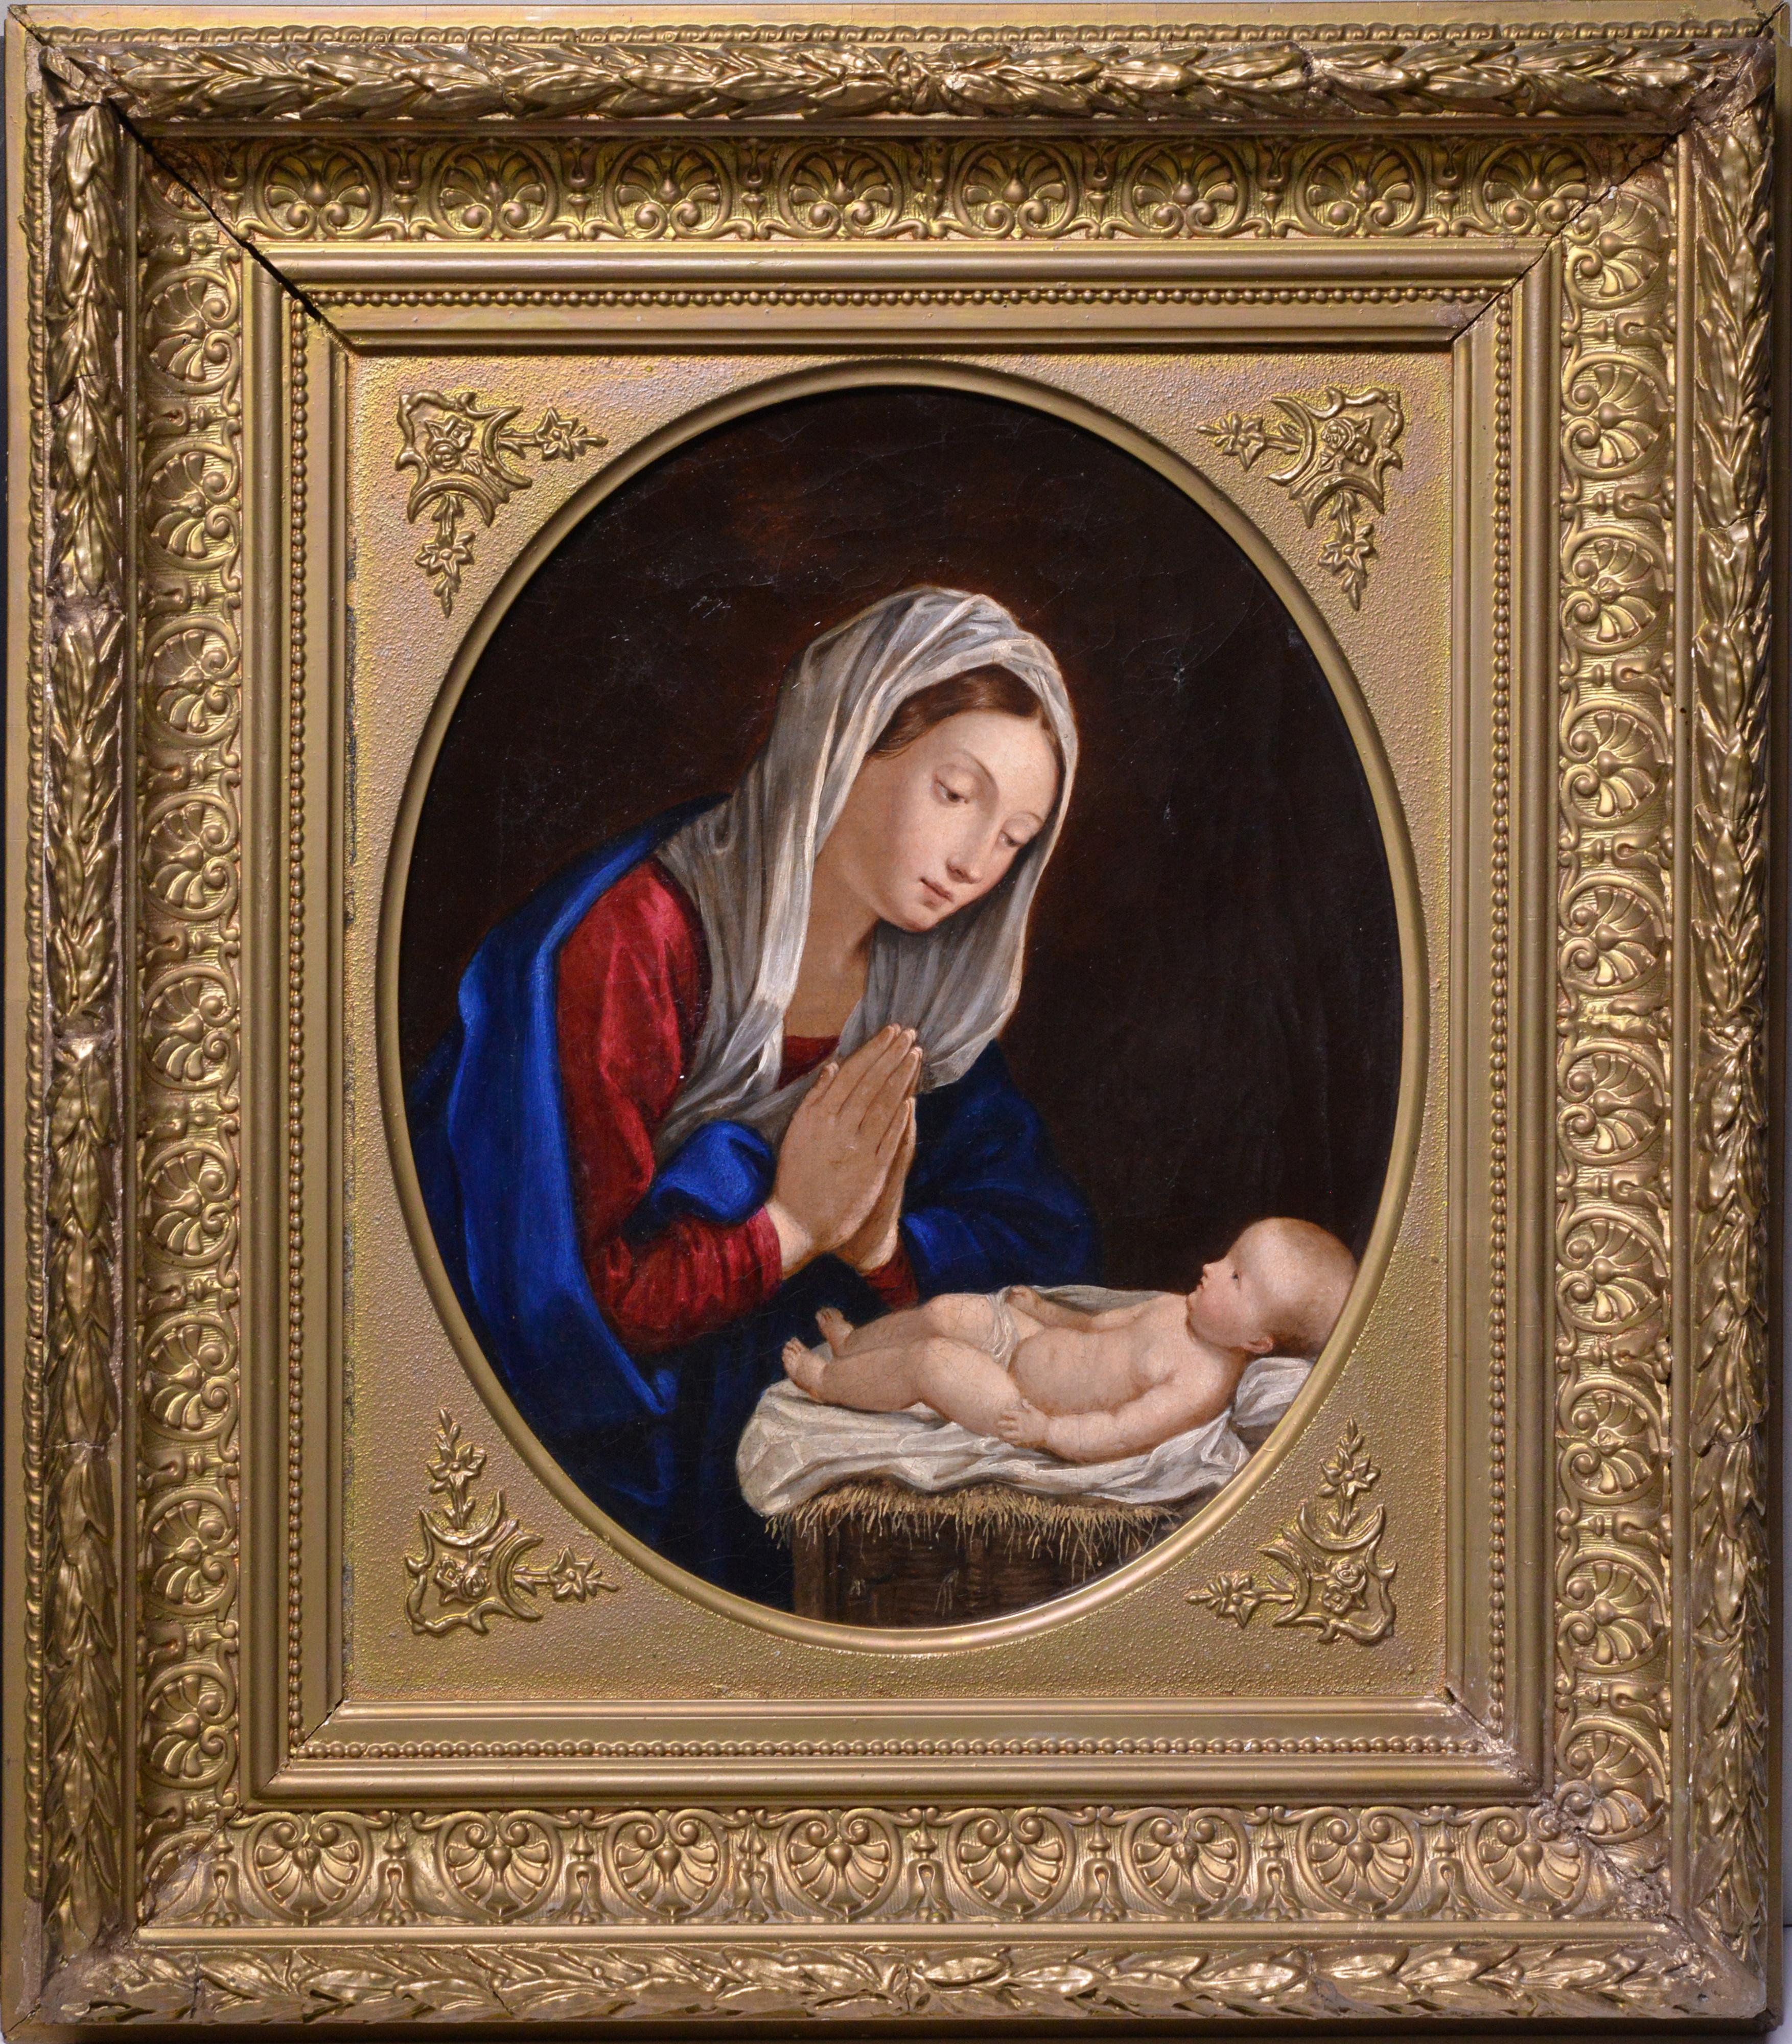 Unknown Figurative Painting – Religiöse Szene, Madonna sitzt und bittet über Kind, Ölgemälde aus dem 19. Jahrhundert